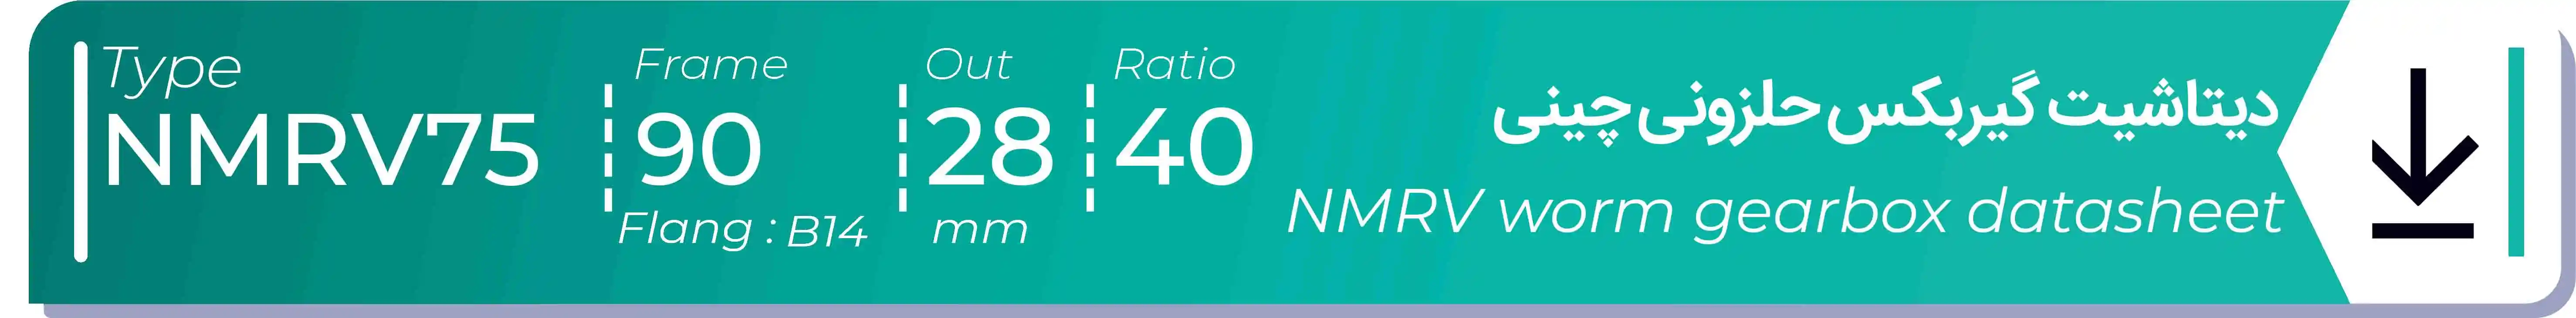  دیتاشیت و مشخصات فنی گیربکس حلزونی چینی   NMRV75  -  با خروجی 28- میلی متر و نسبت40 و فریم 90